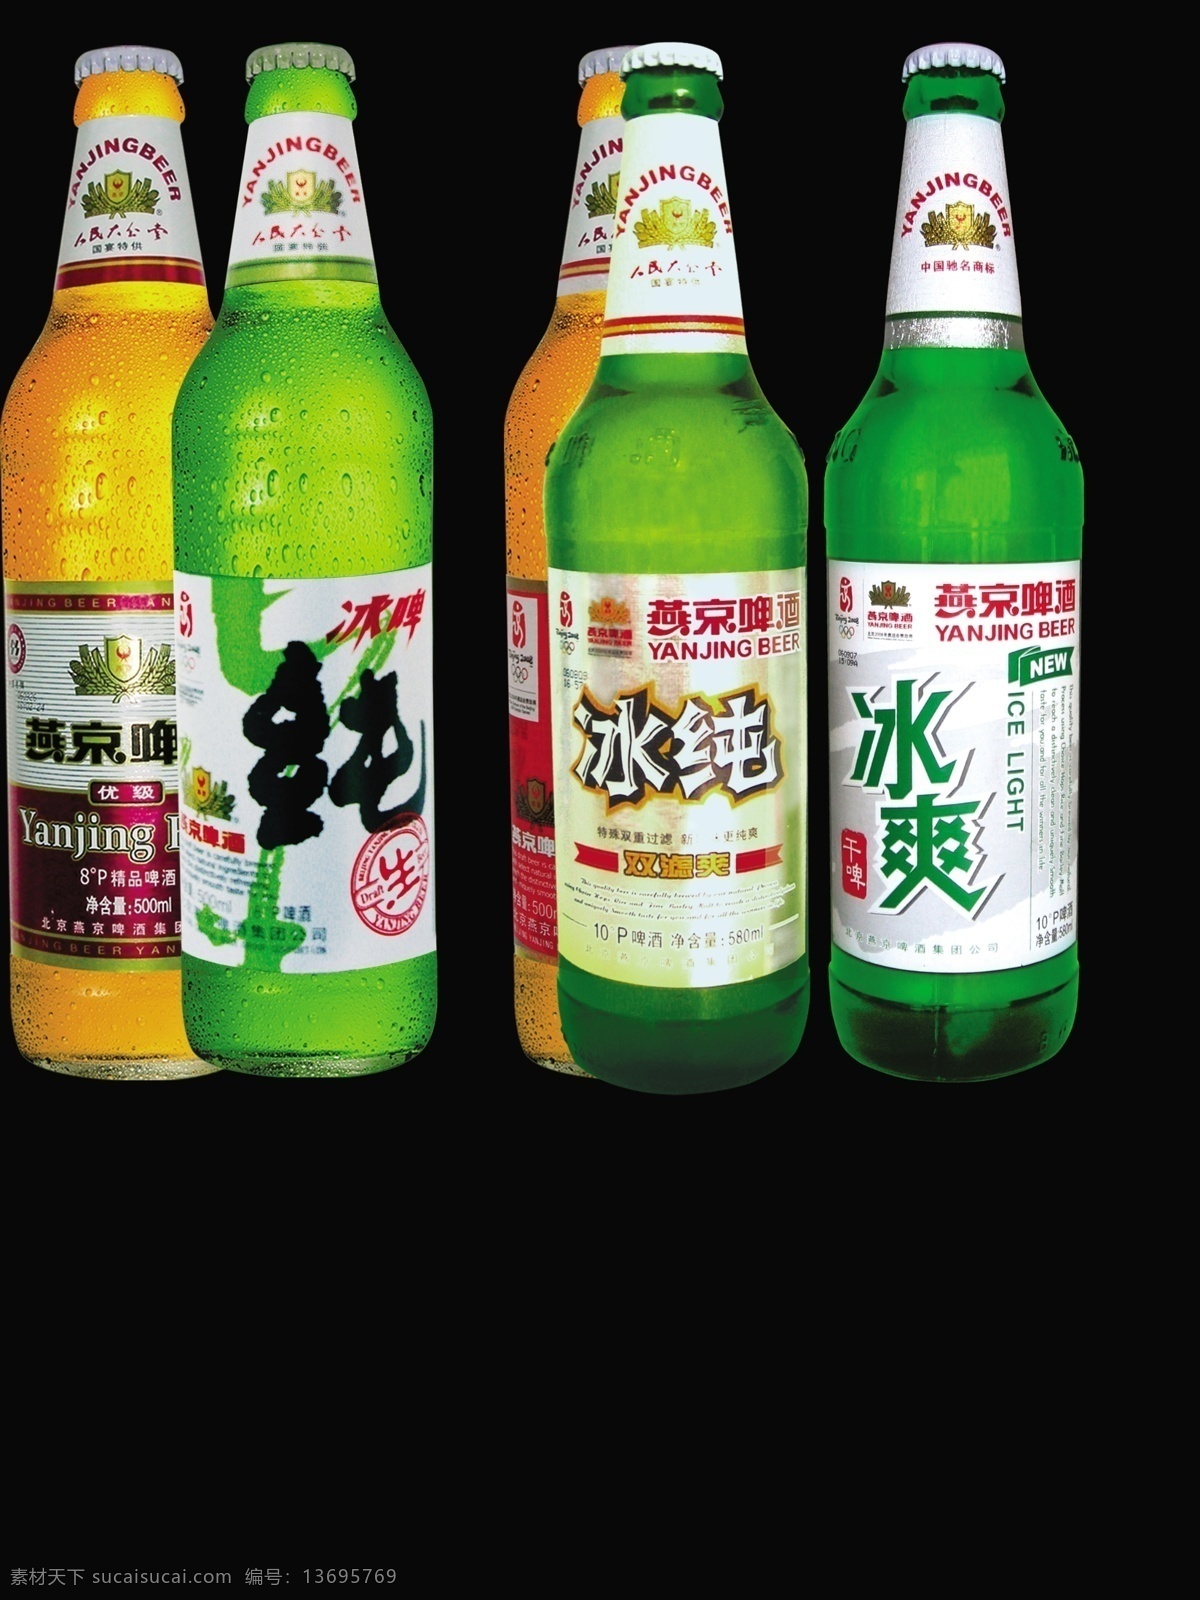 分层 酒瓶 啤酒 啤酒酒瓶 燕京 燕京啤酒 源文件 模板下载 燕京产品 矢量图 日常生活